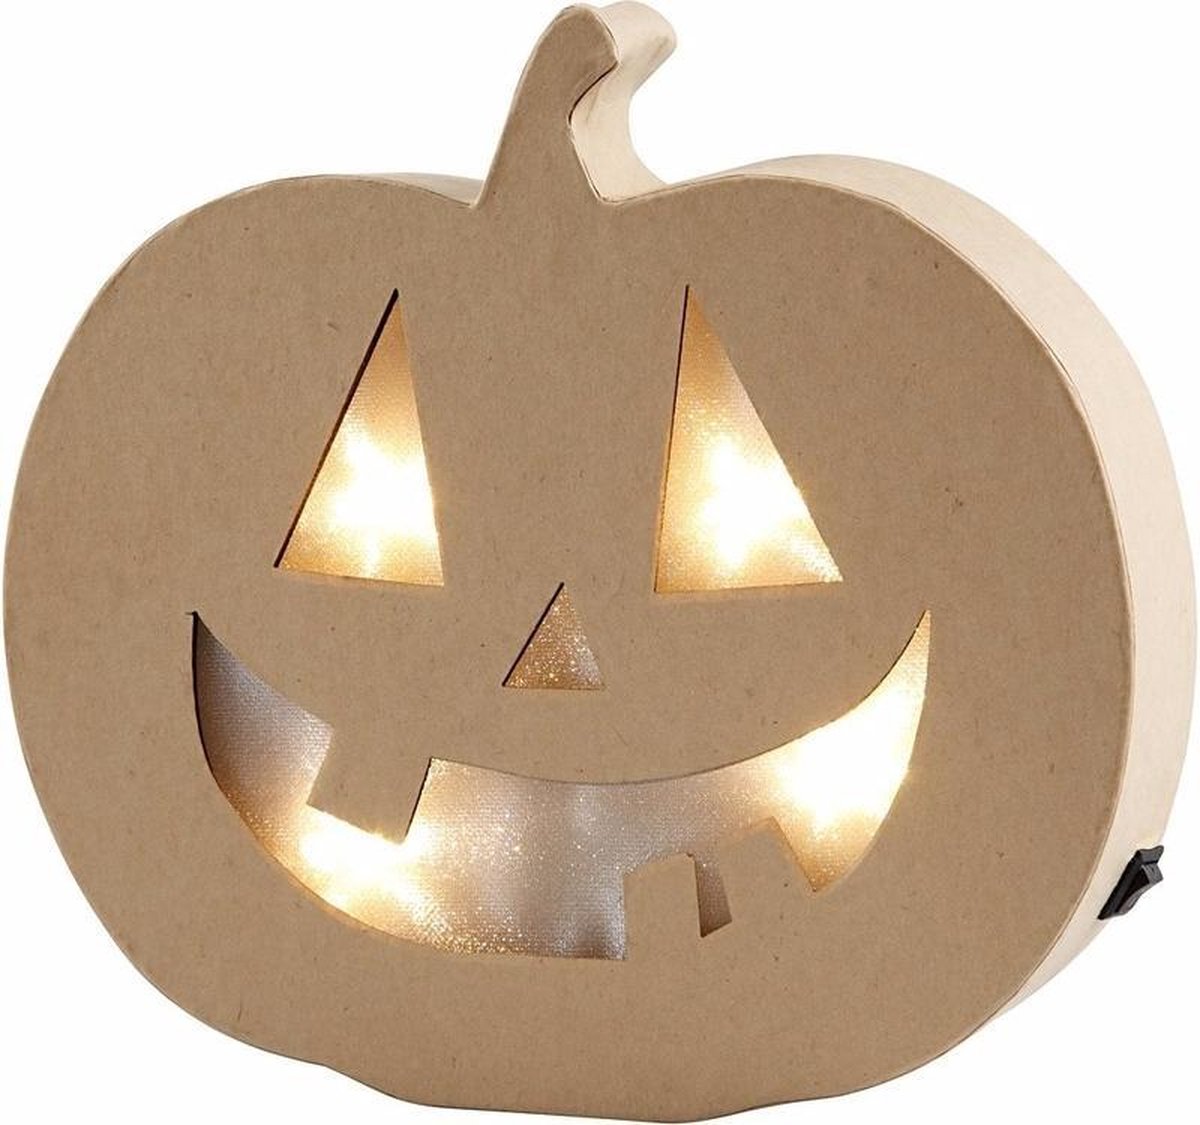 Halloween - Pompoen Halloween decoratie met licht van papier mache 22 cm |  bol.com